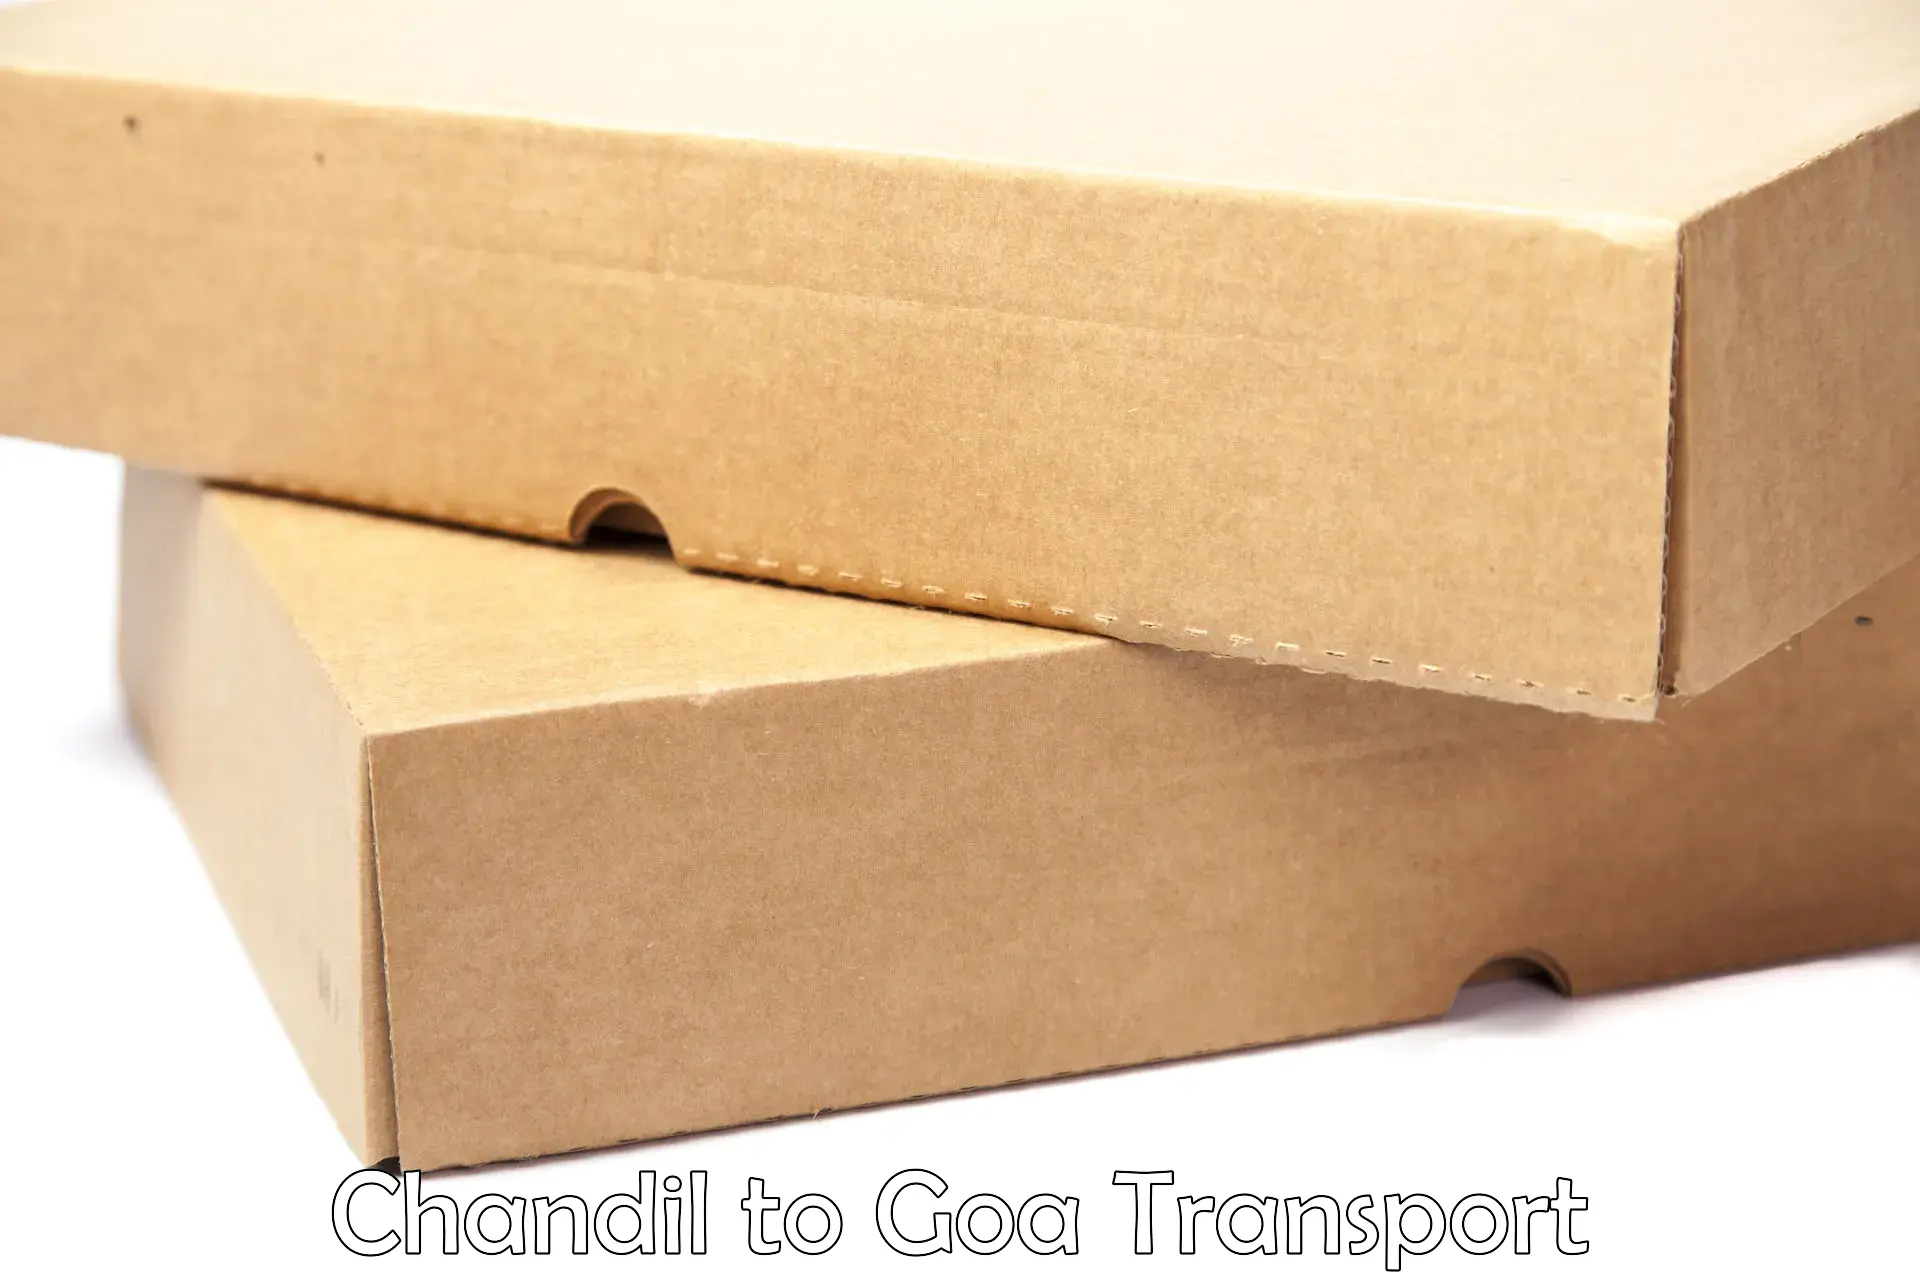 Nearest transport service Chandil to Ponda